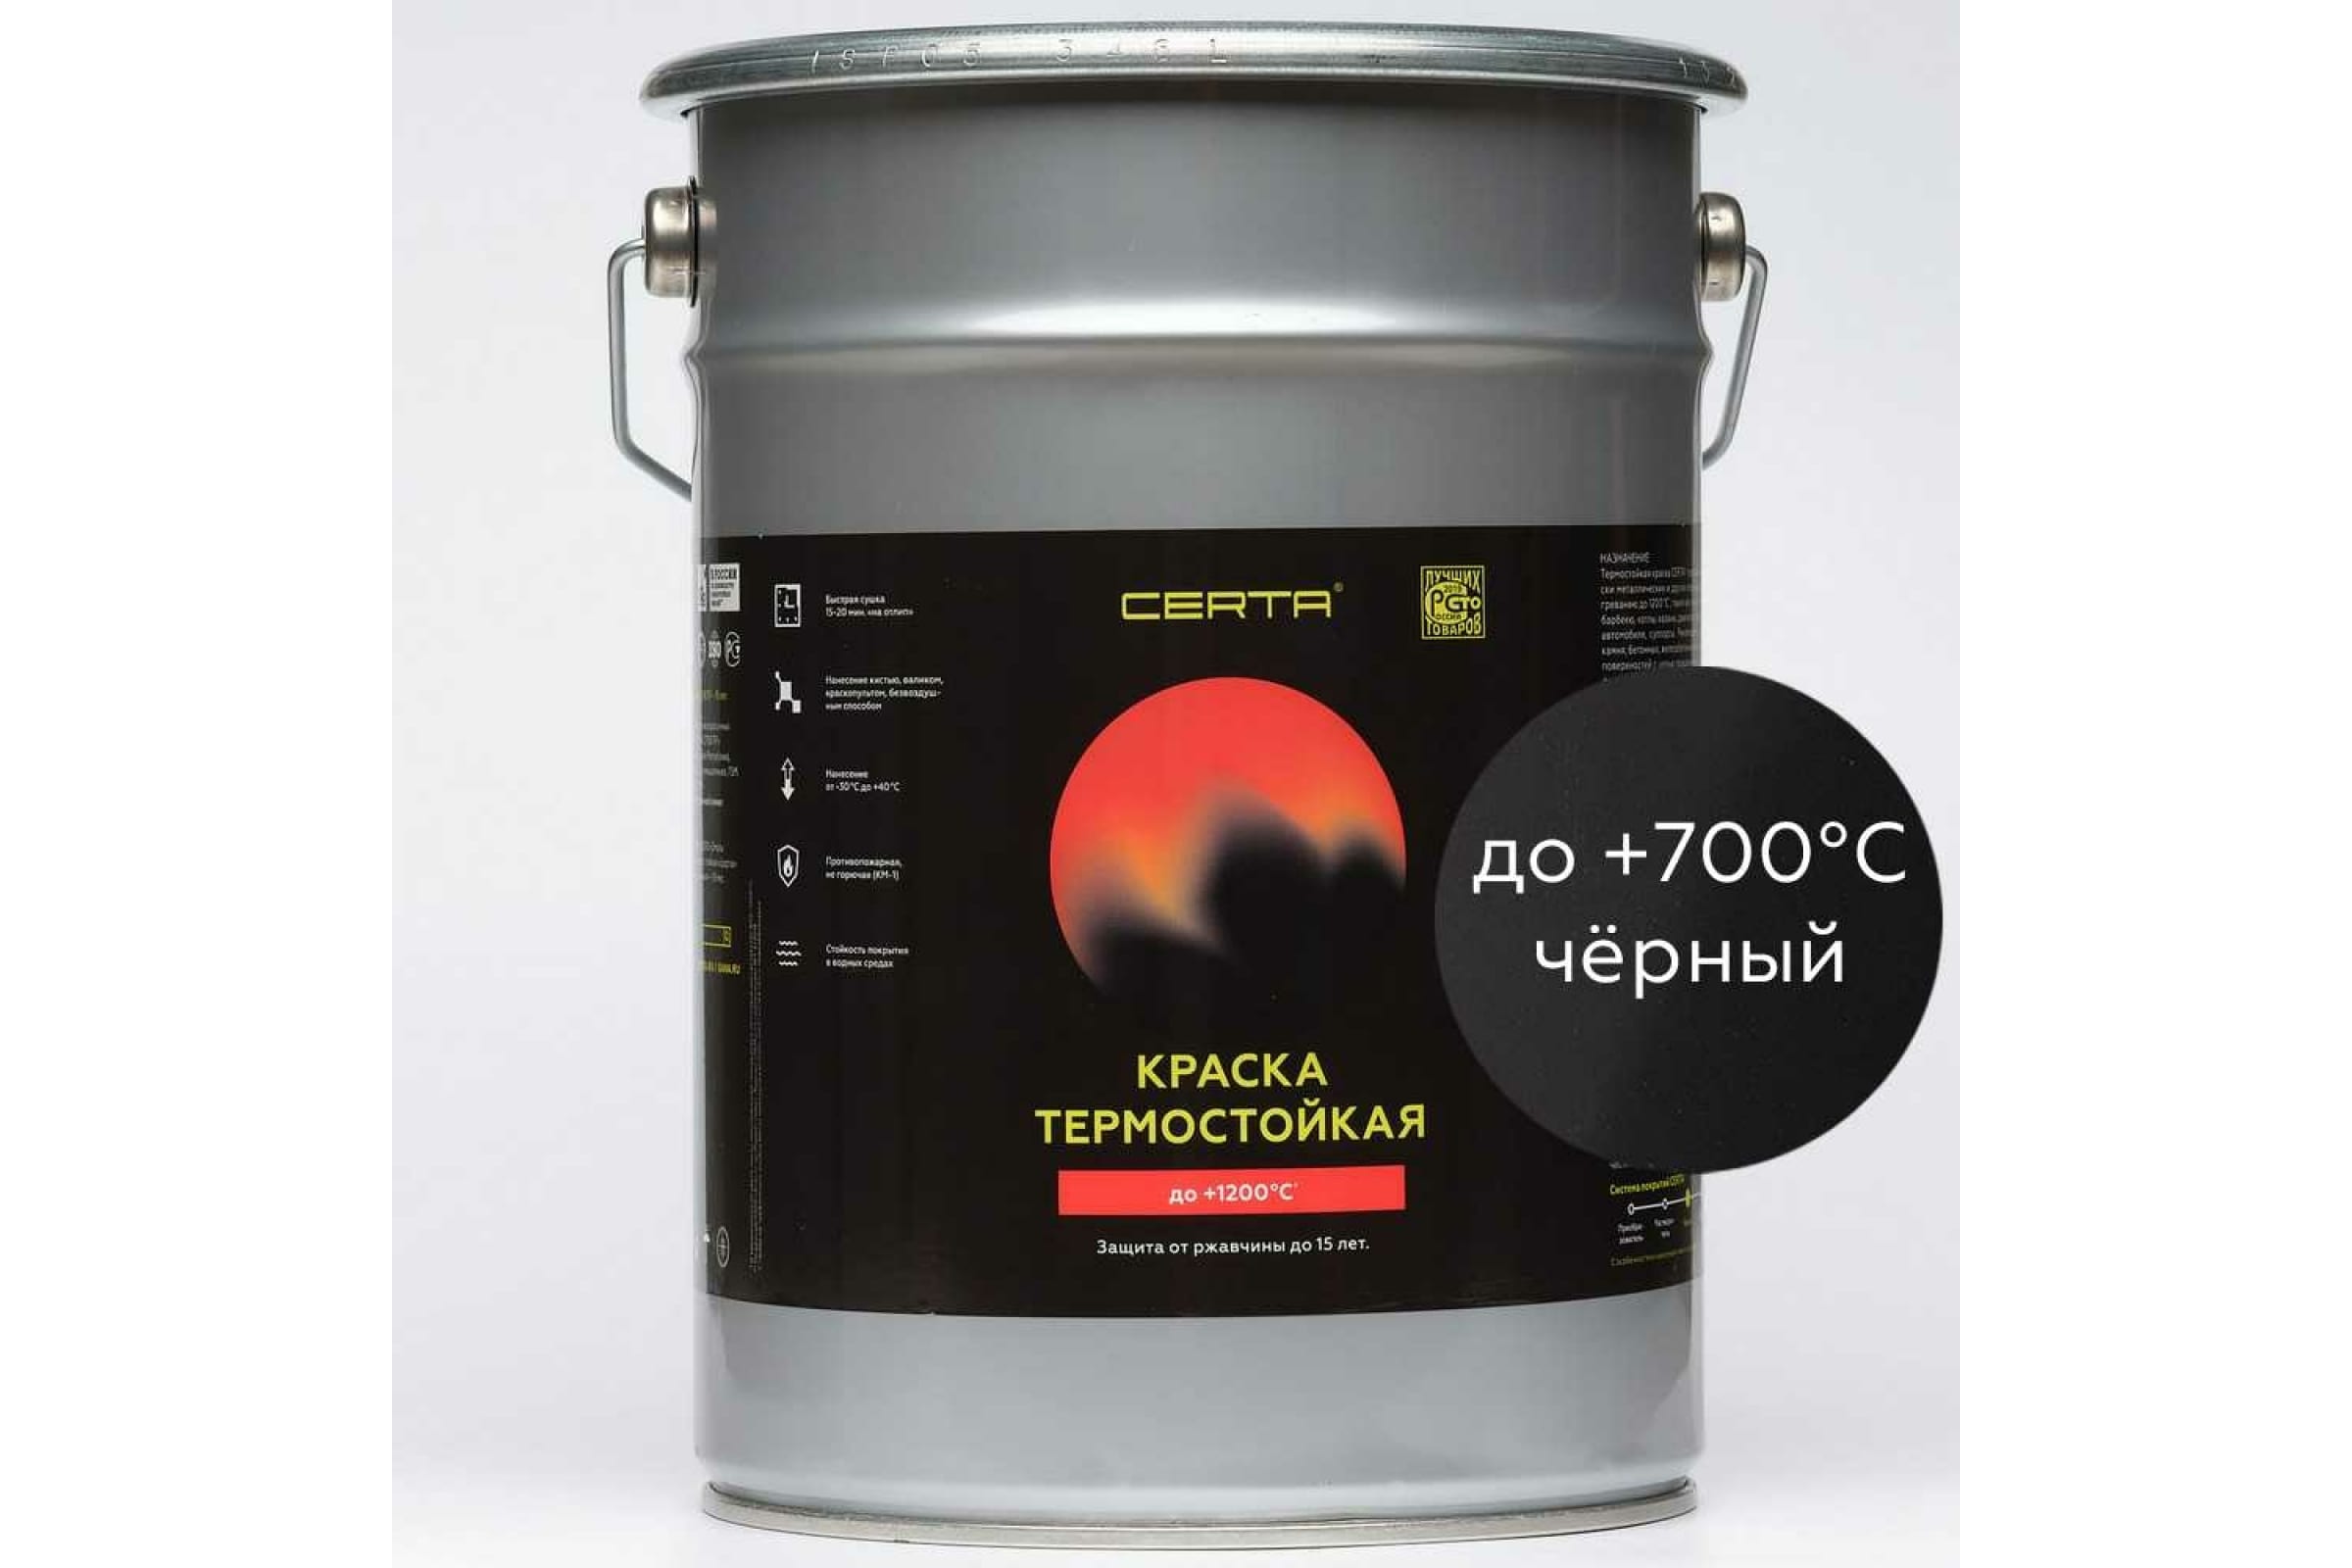 фото Certa эмаль термостойкая антикоррозионная до 700 с черный ral 9004 4кг cst00035